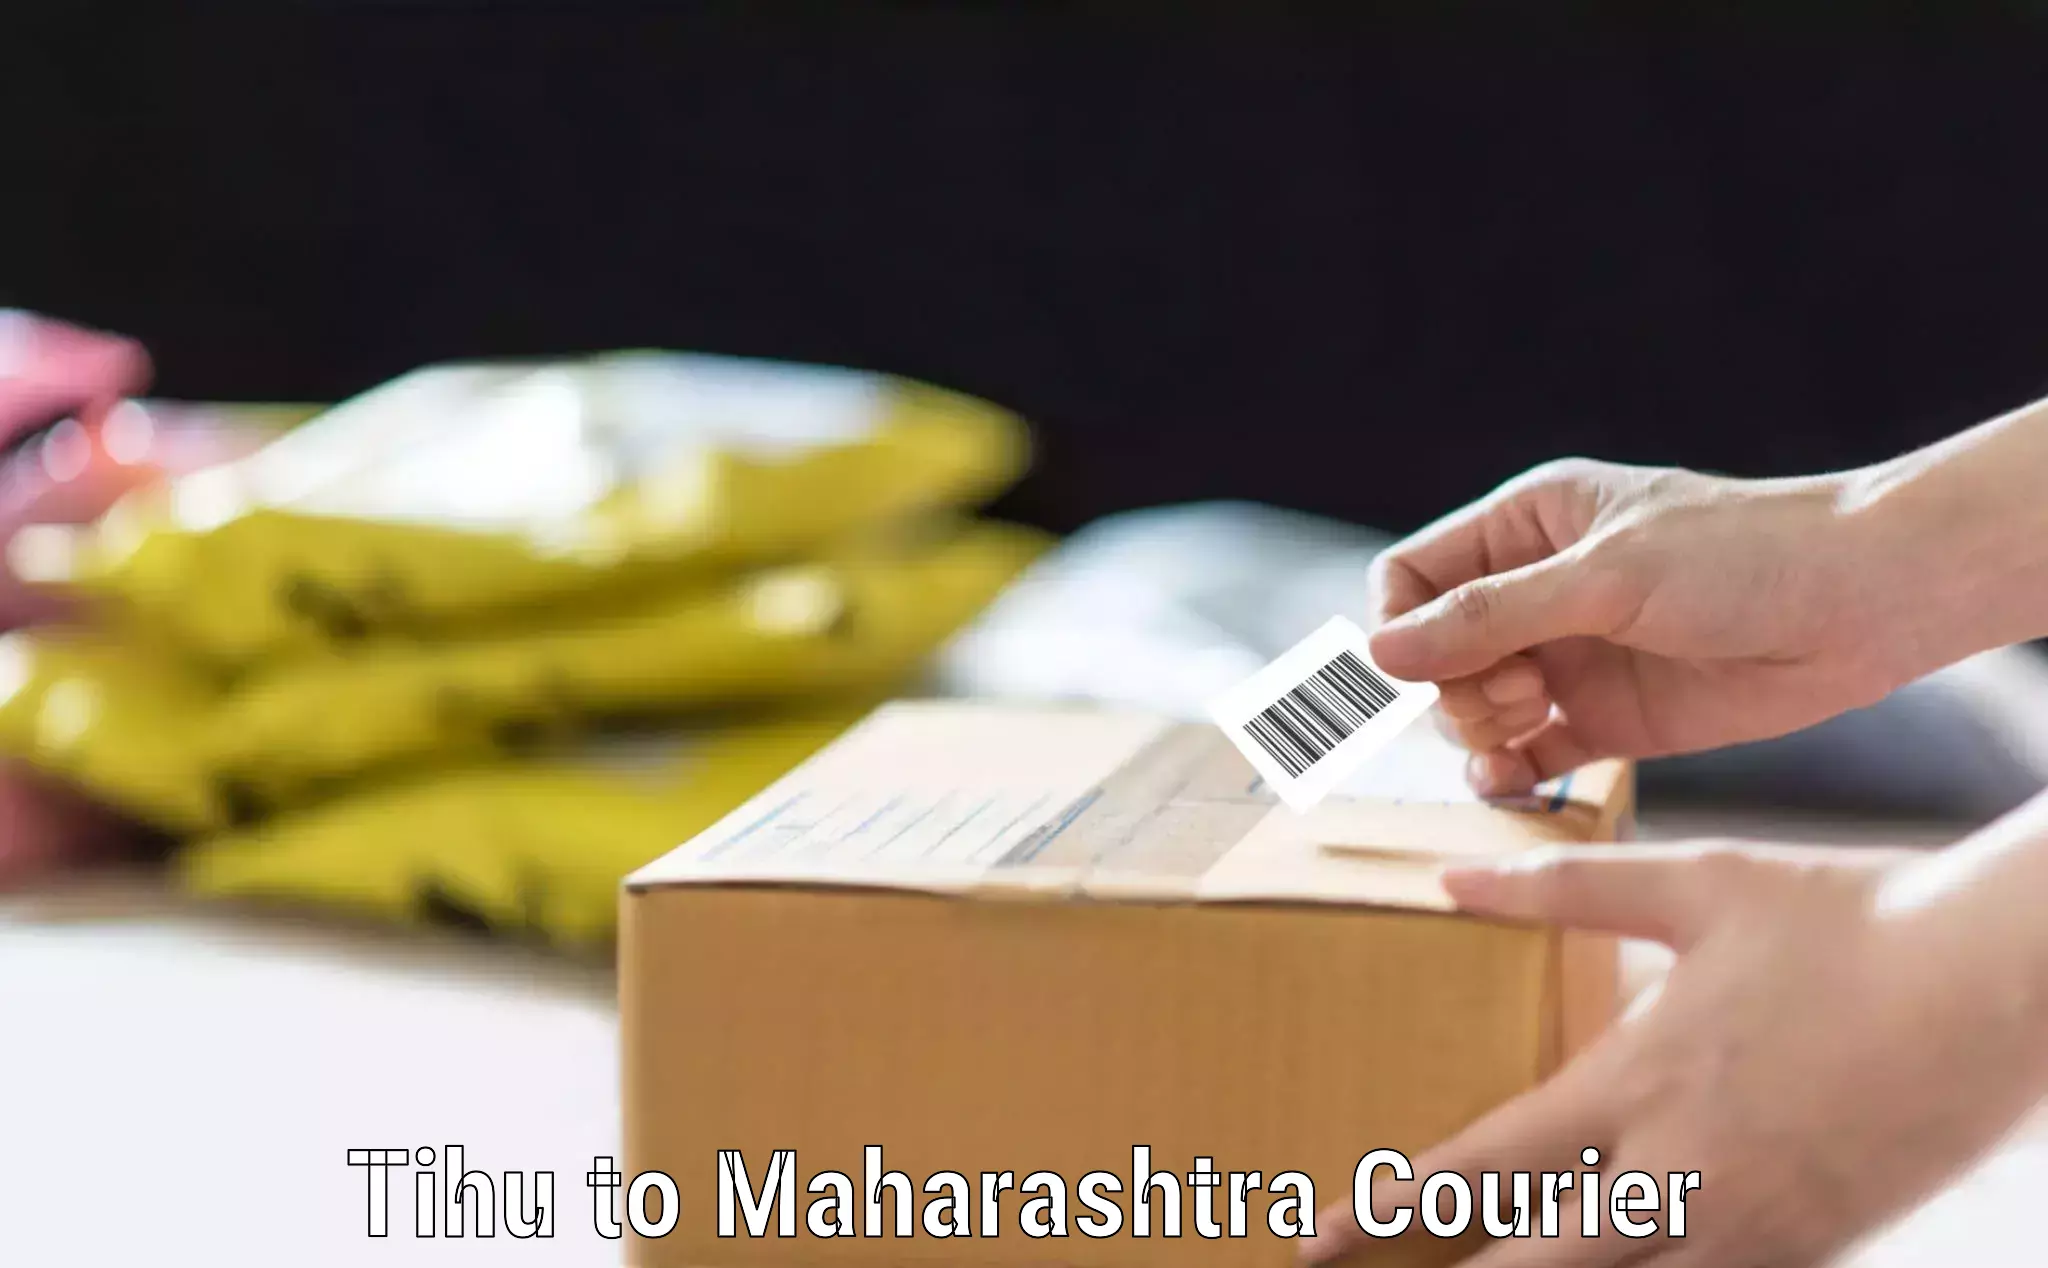 Overnight luggage courier Tihu to Maharashtra